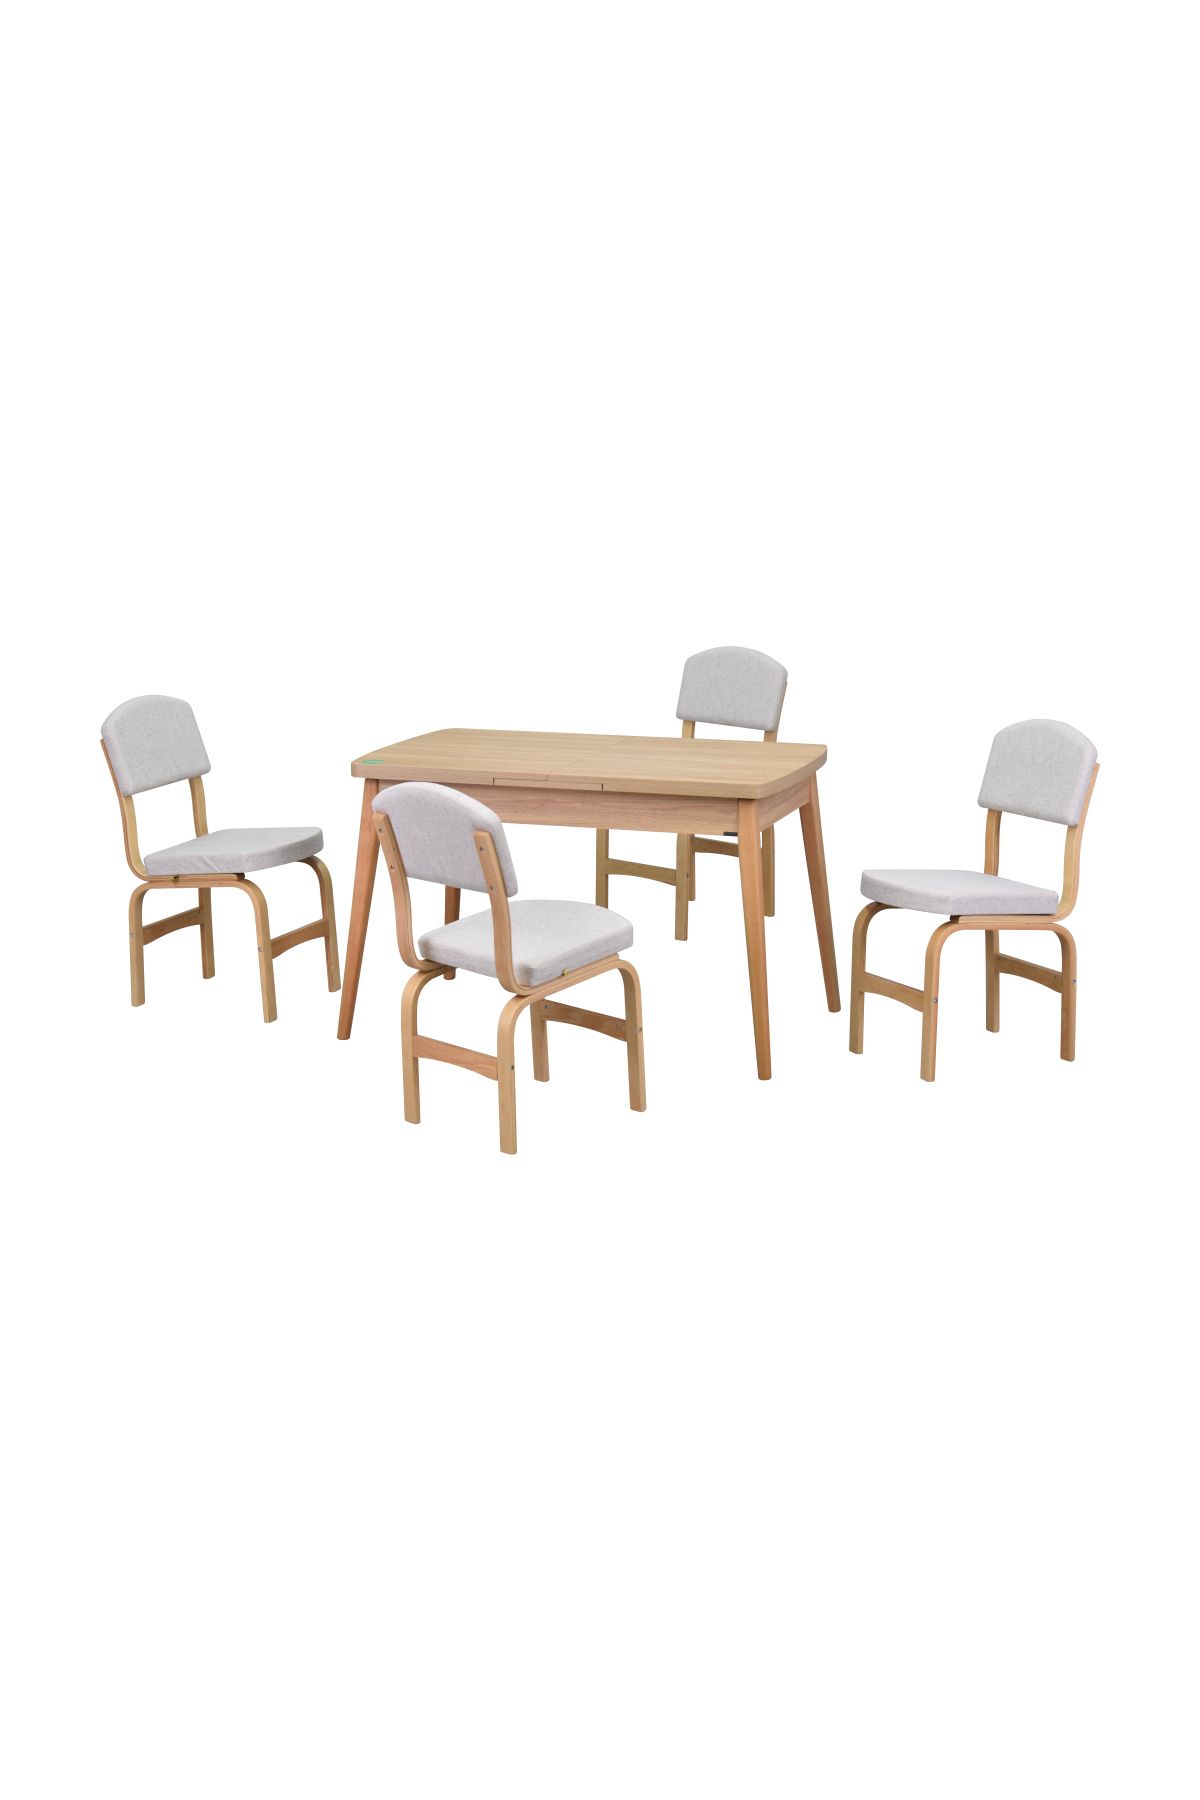 VİLİNZE Ege Sandalye Avanos Ahşap MDF Açılır Mutfak Masası Takımı - 70x120+30 cm